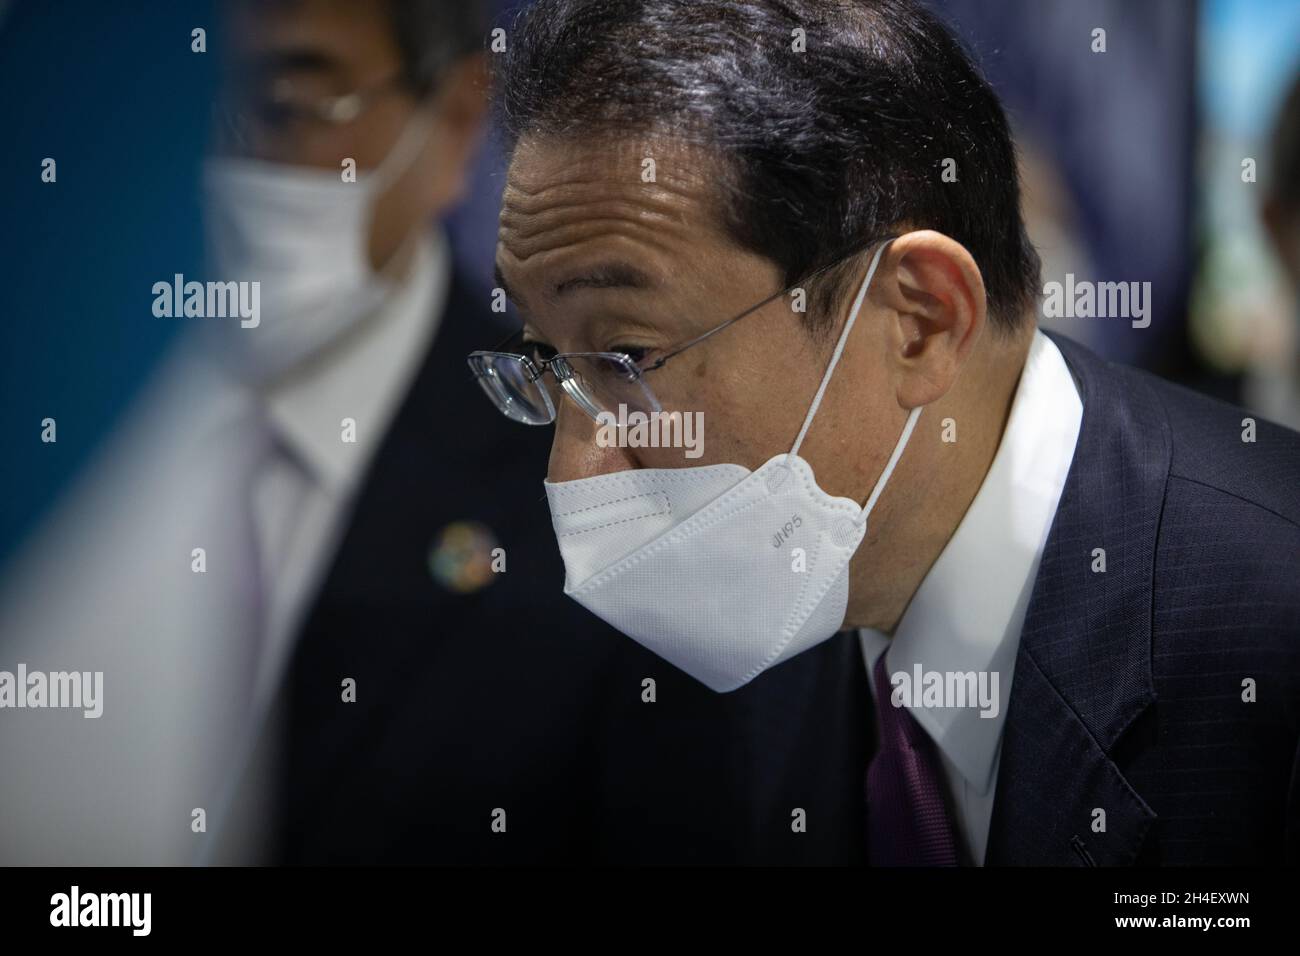 Glasgow, Großbritannien. Der japanische Premierminister Fumio Kishida nimmt am 2. November 2021 am Japan Pavilion in der Blauen Zone der 26. UN-Klimakonferenz, bekannt als COP26, in Glasgow, Großbritannien, Teil. Foto: Jeremy Sutton-Hibbert/Alamy Live News. Stockfoto